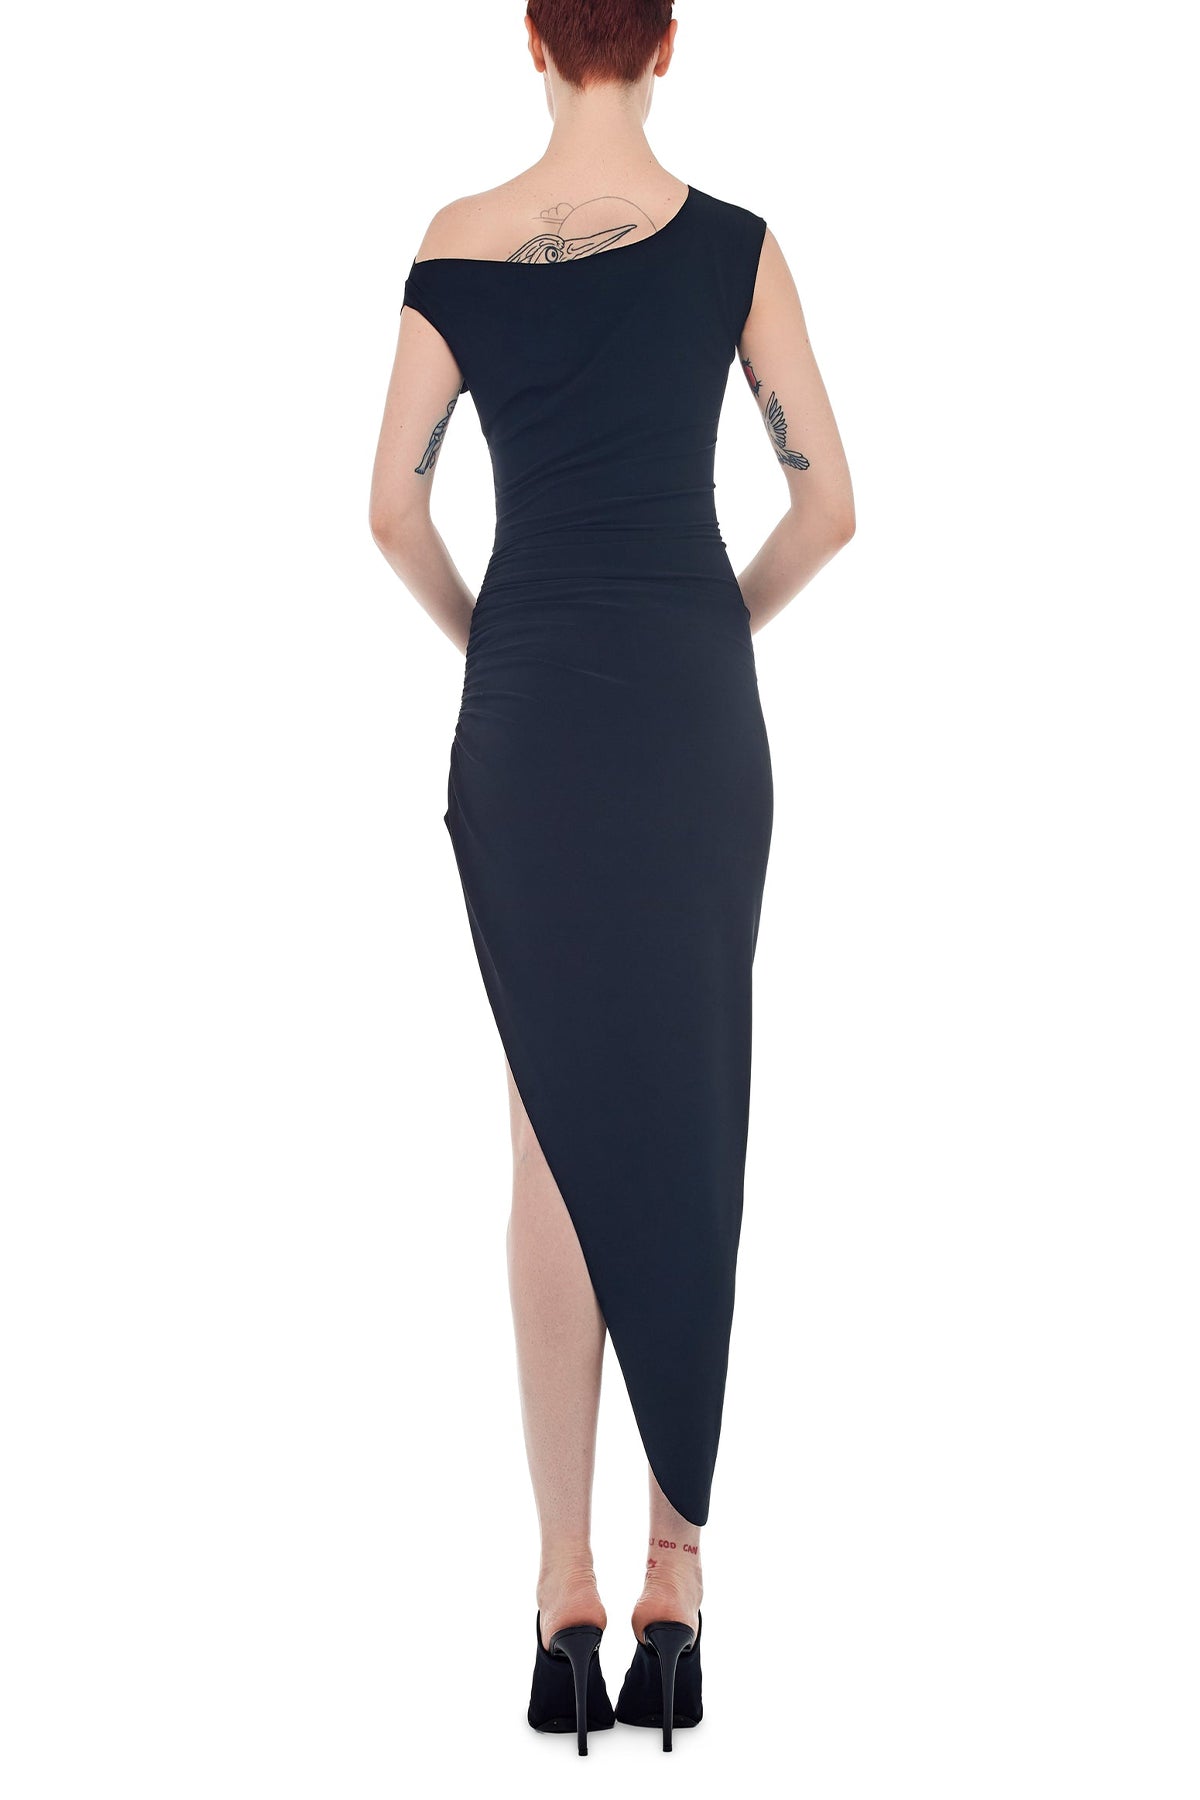 Drop Shoulder Side Drape Dress in Black - shop-olivia.com